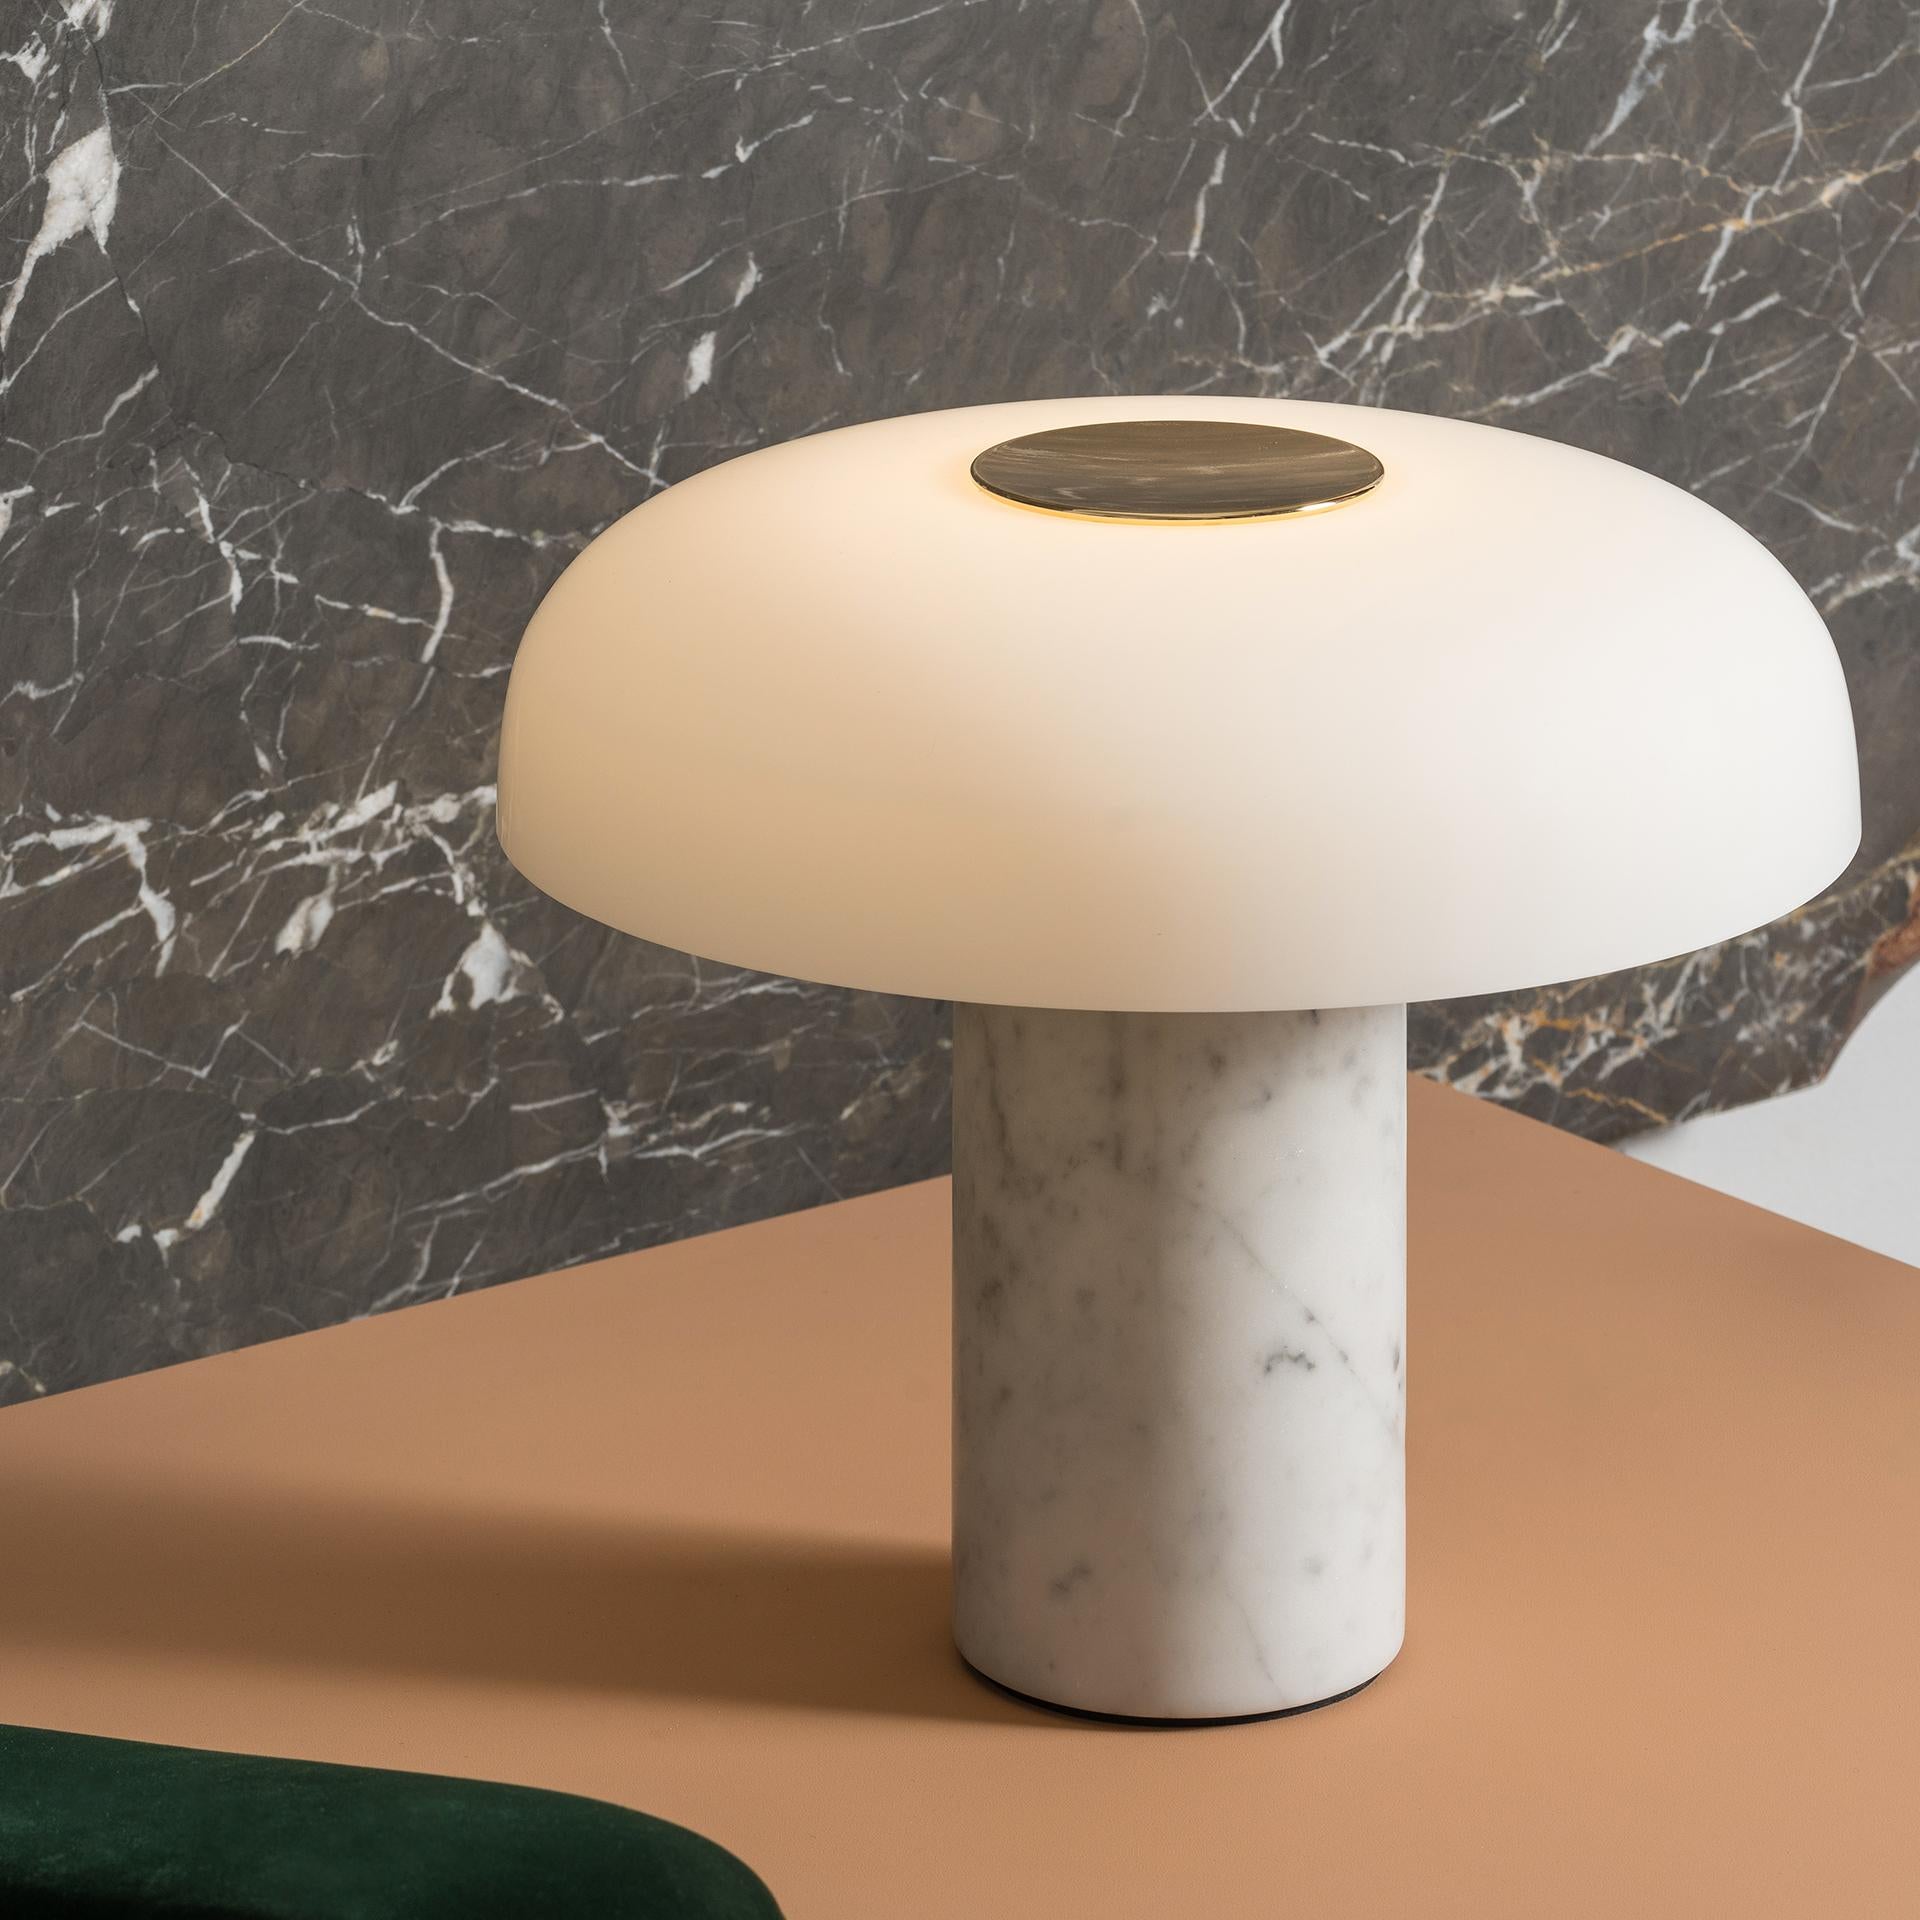 Studio Buratti 'Tropico' Tischleuchte aus weißem Marmor und Glas für Fontana Arte. 

Ausgeführt in hochwertigem Marmor, dickem geätztem mundgeblasenem Opalglas und galvanisiertem goldfarbenem Metall. Die 